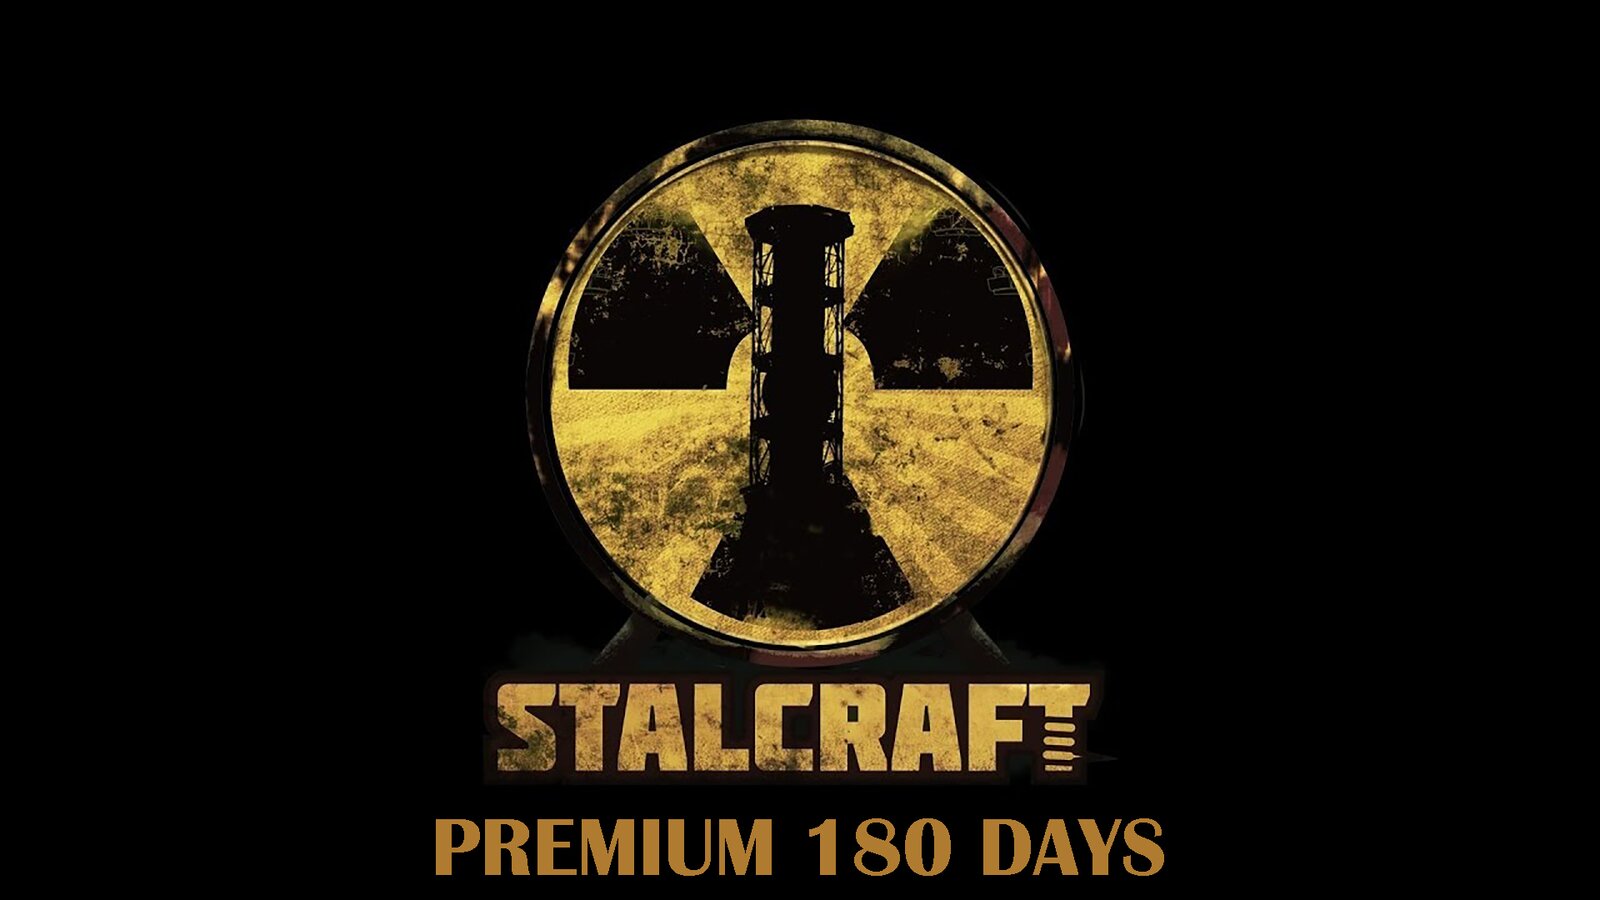 Stalcraft - Premium 180 days